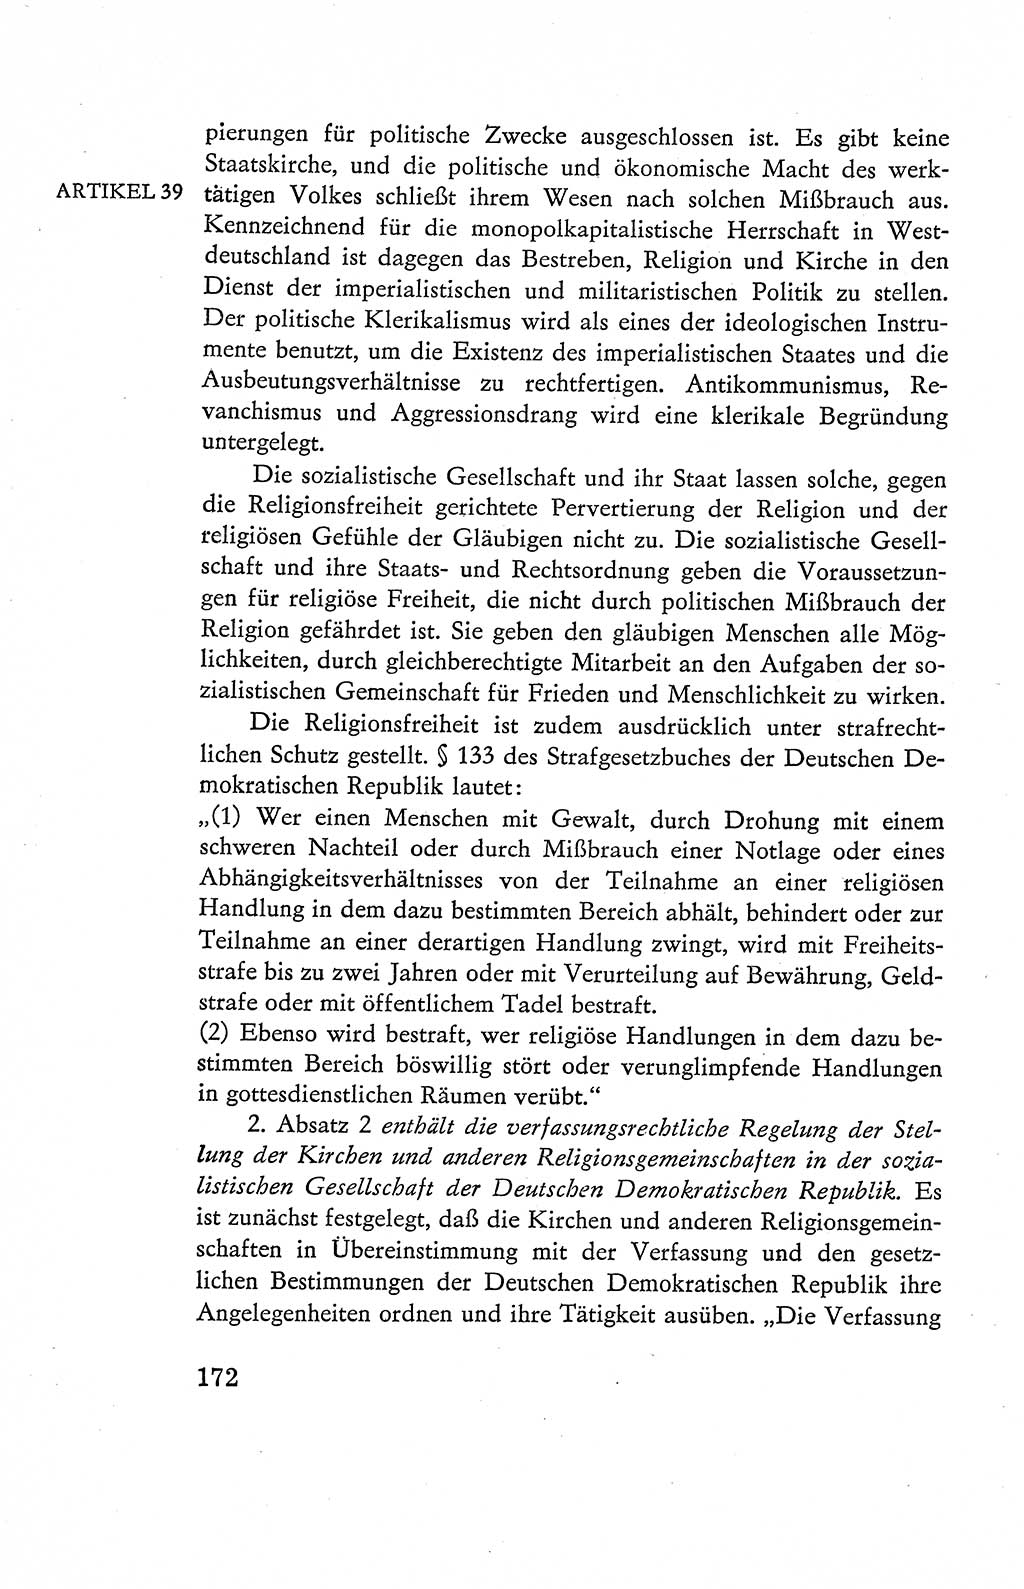 Verfassung der Deutschen Demokratischen Republik (DDR), Dokumente, Kommentar 1969, Band 2, Seite 172 (Verf. DDR Dok. Komm. 1969, Bd. 2, S. 172)